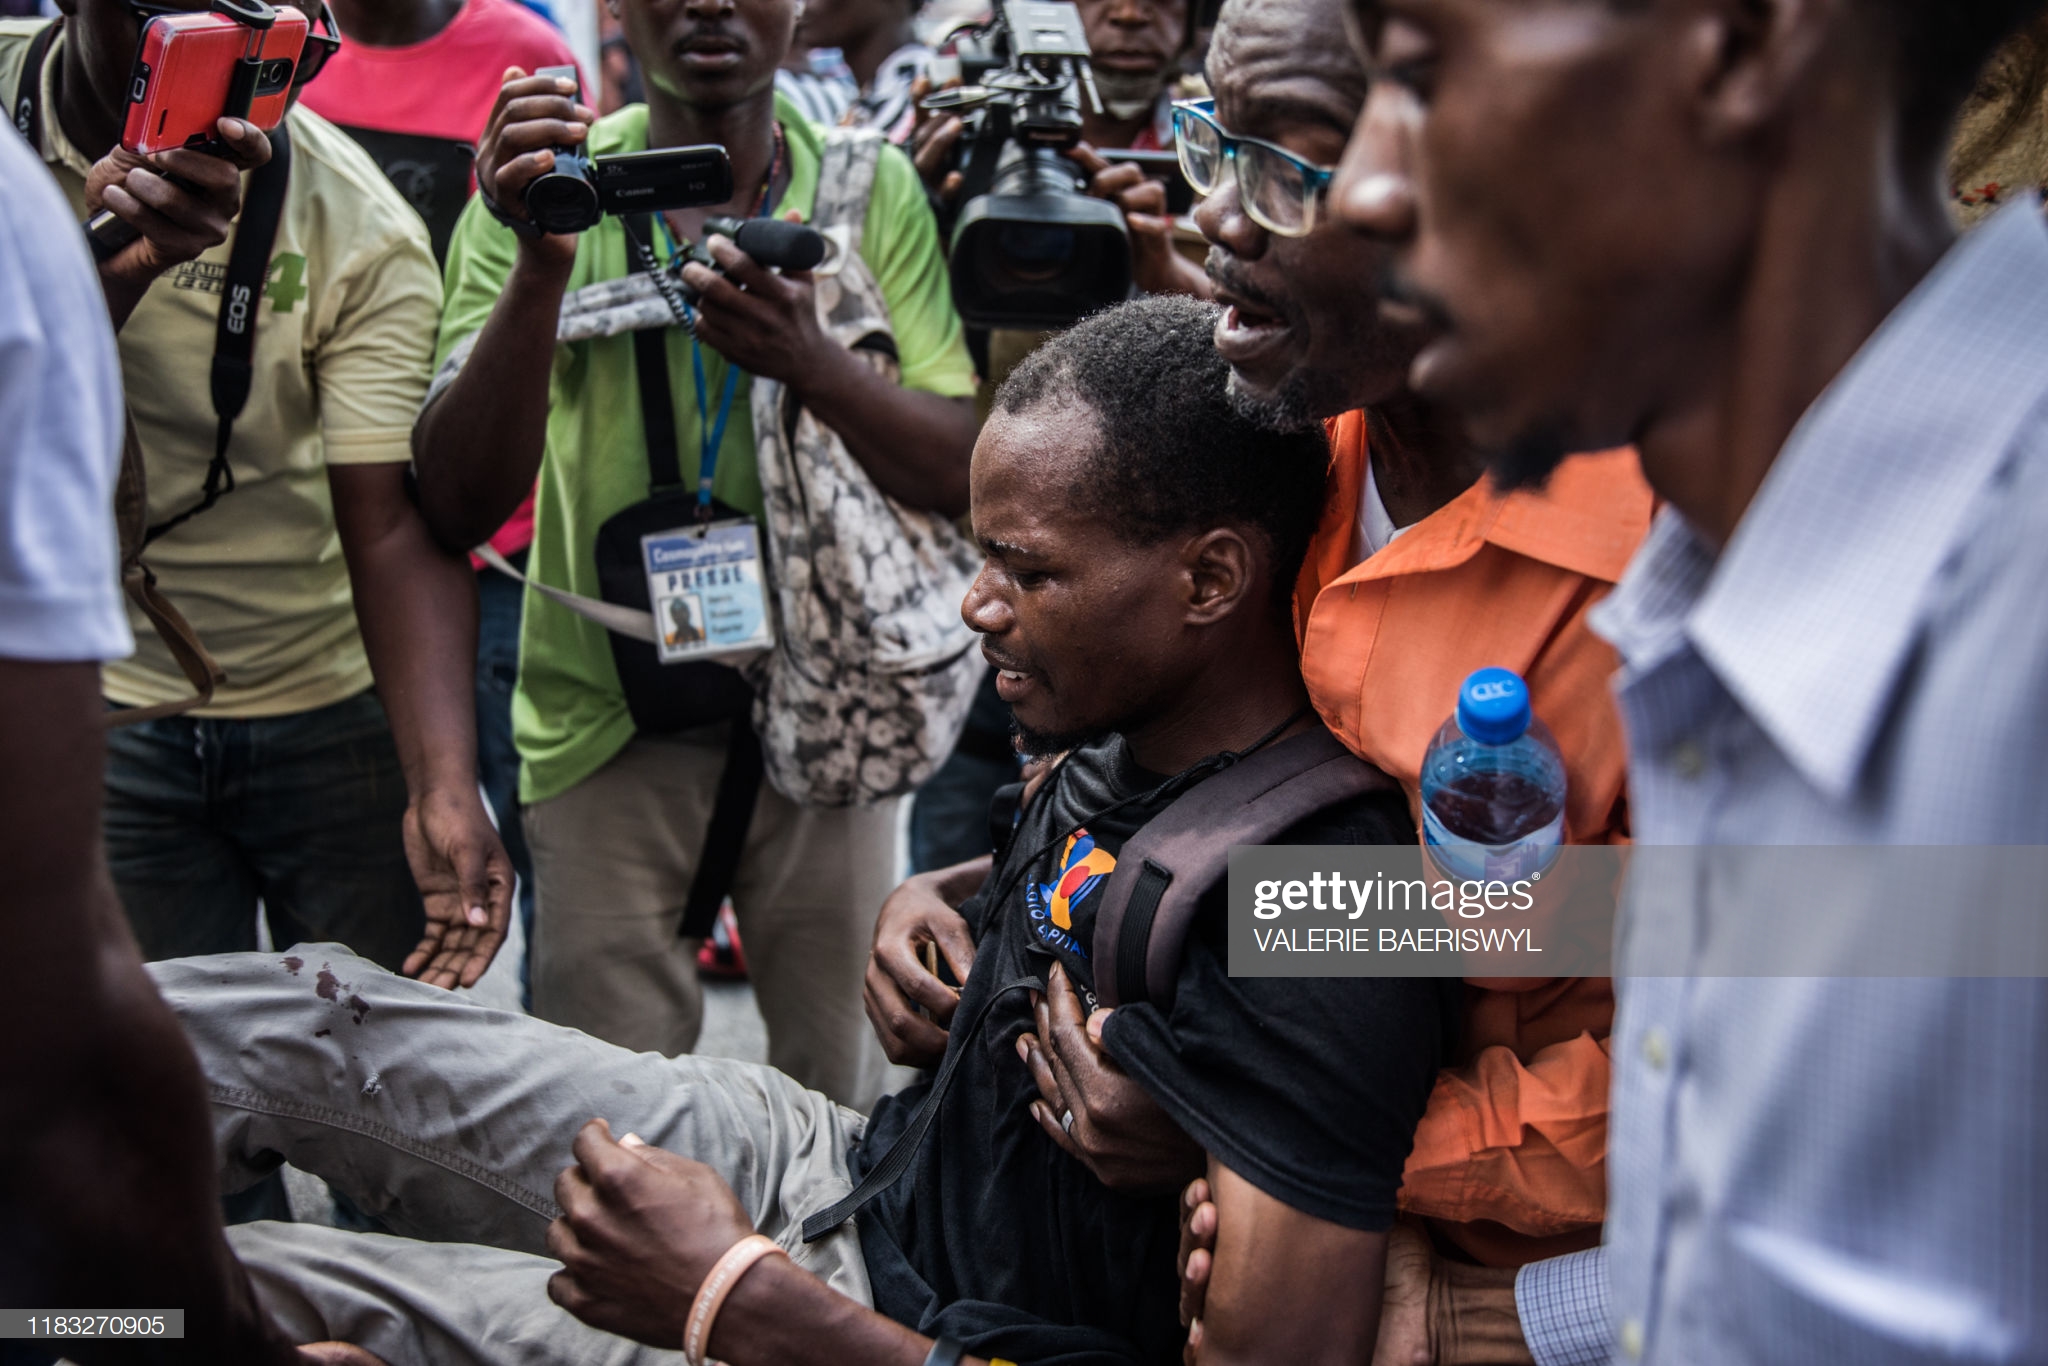 journalist-shot-in-haiti